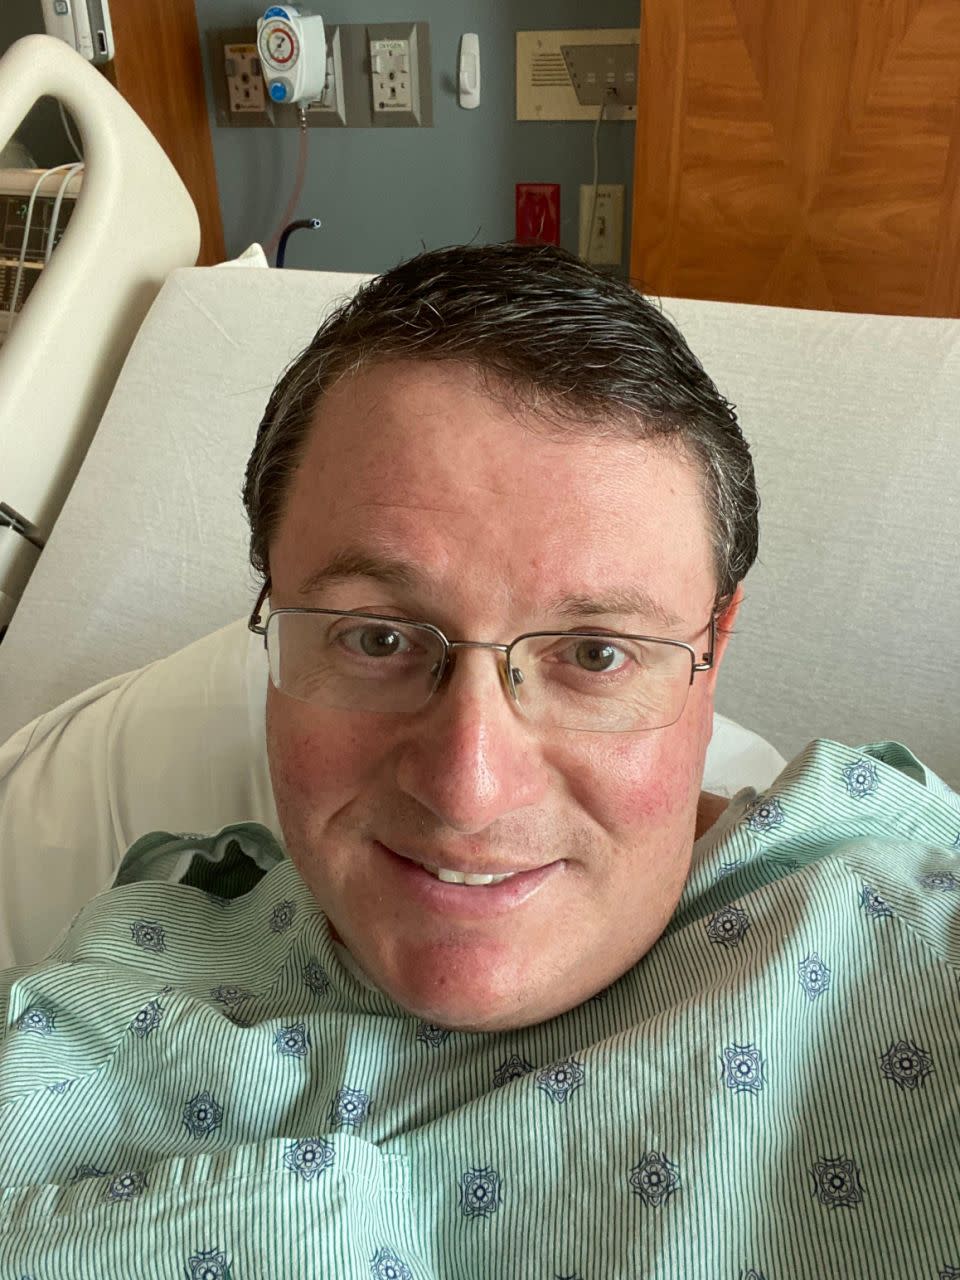 Un selfie del representante republicano estatal Randy Fine desde su cama de hospital en el Centro Médico Regional de Holmes, el 4 de agosto de 2020, donde fue ingresado para mantenerlo en observación debido a la COVDI-19.